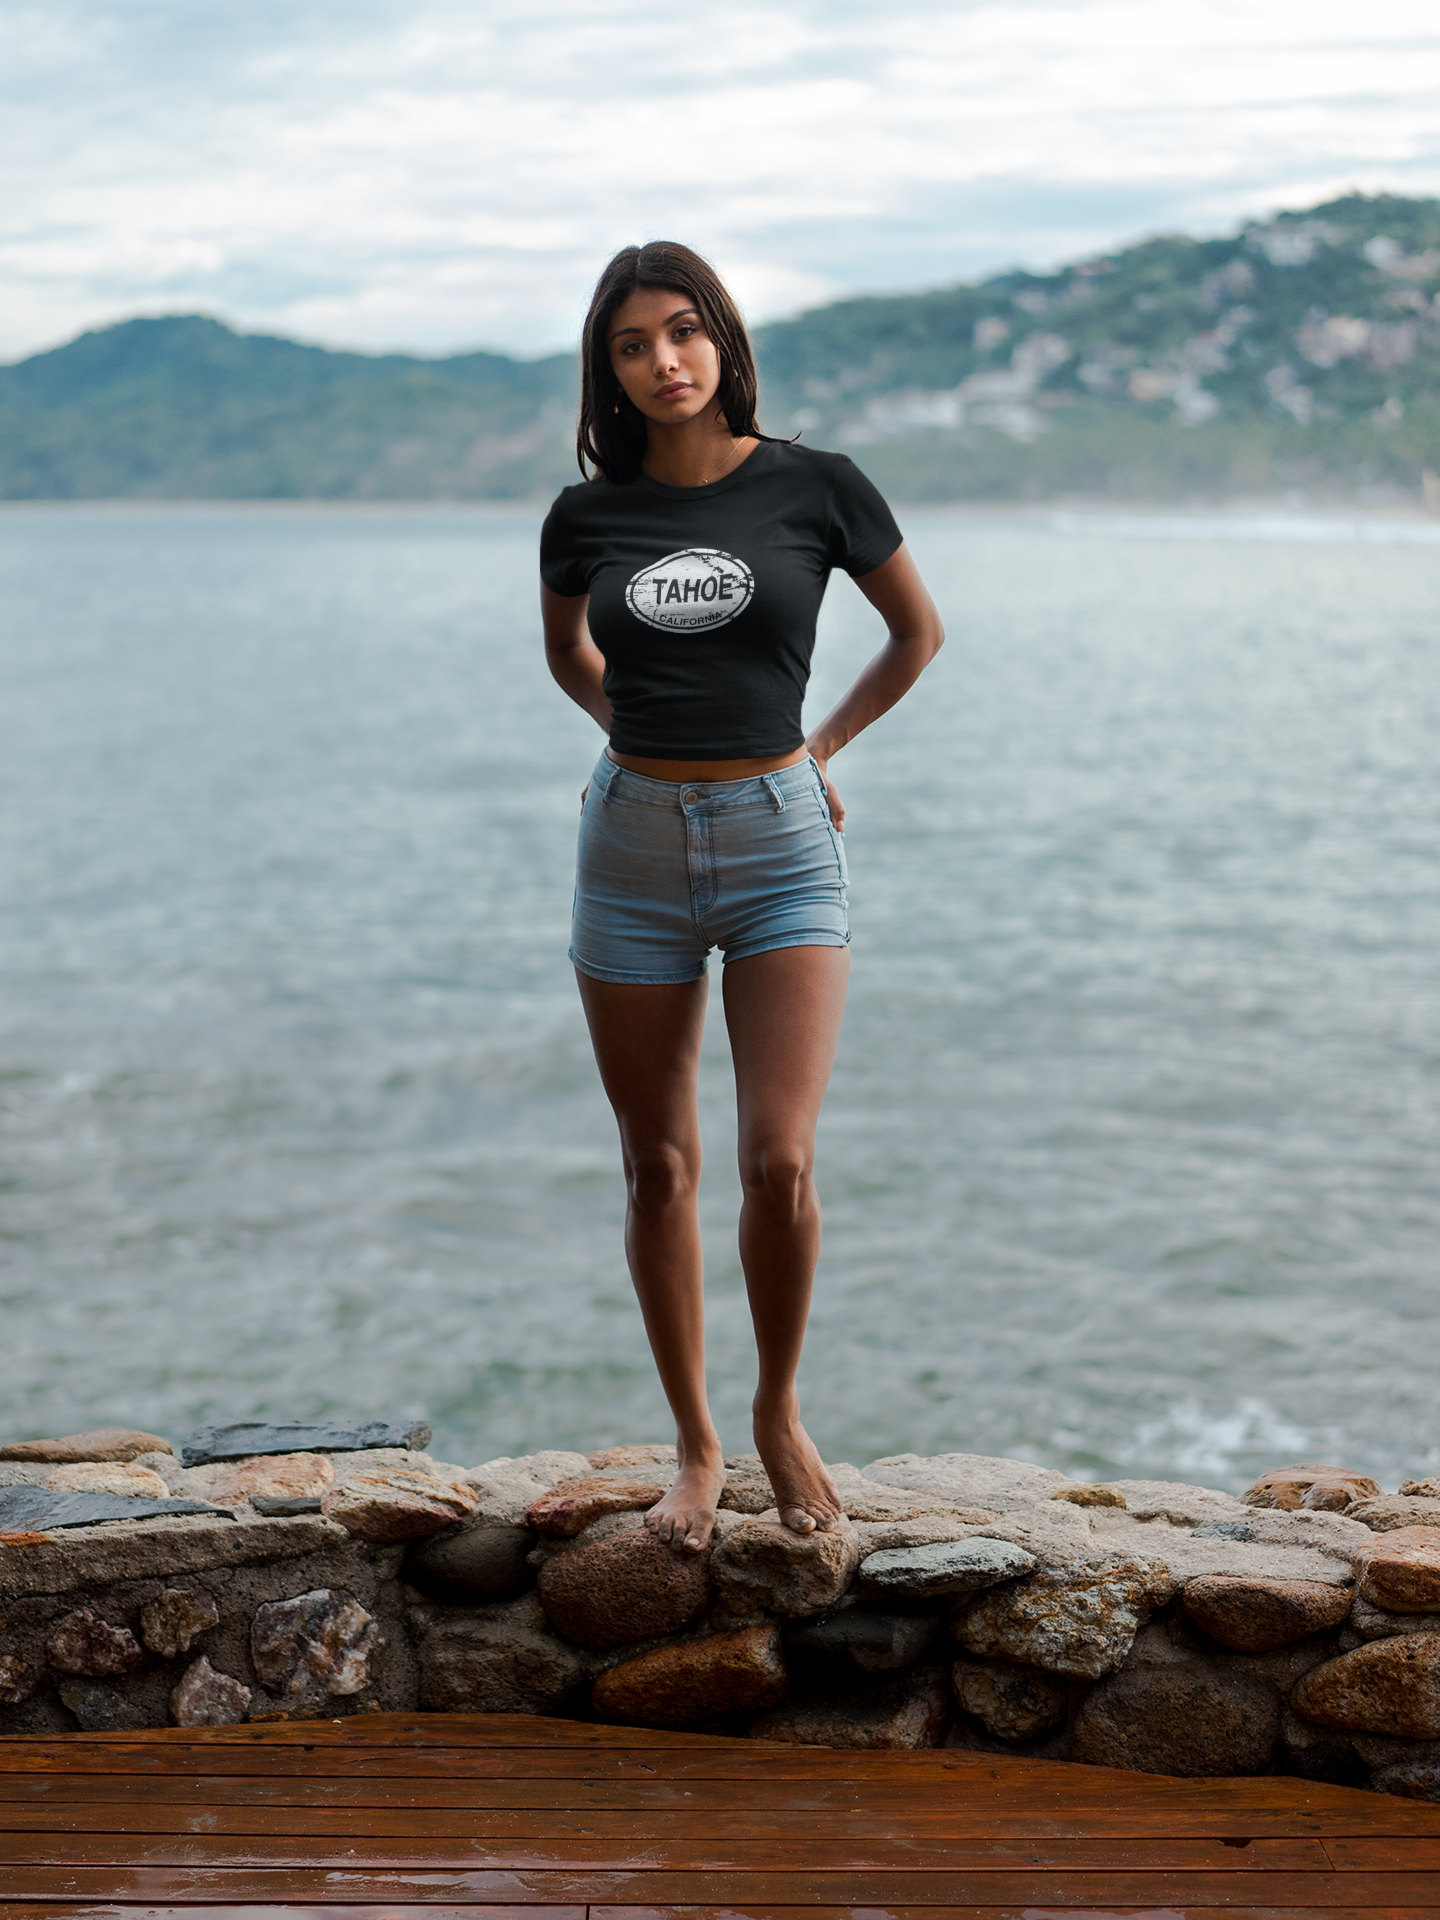 Lake Tahoe Women's Classic T-Shirt Souvenirs - My Destination Location